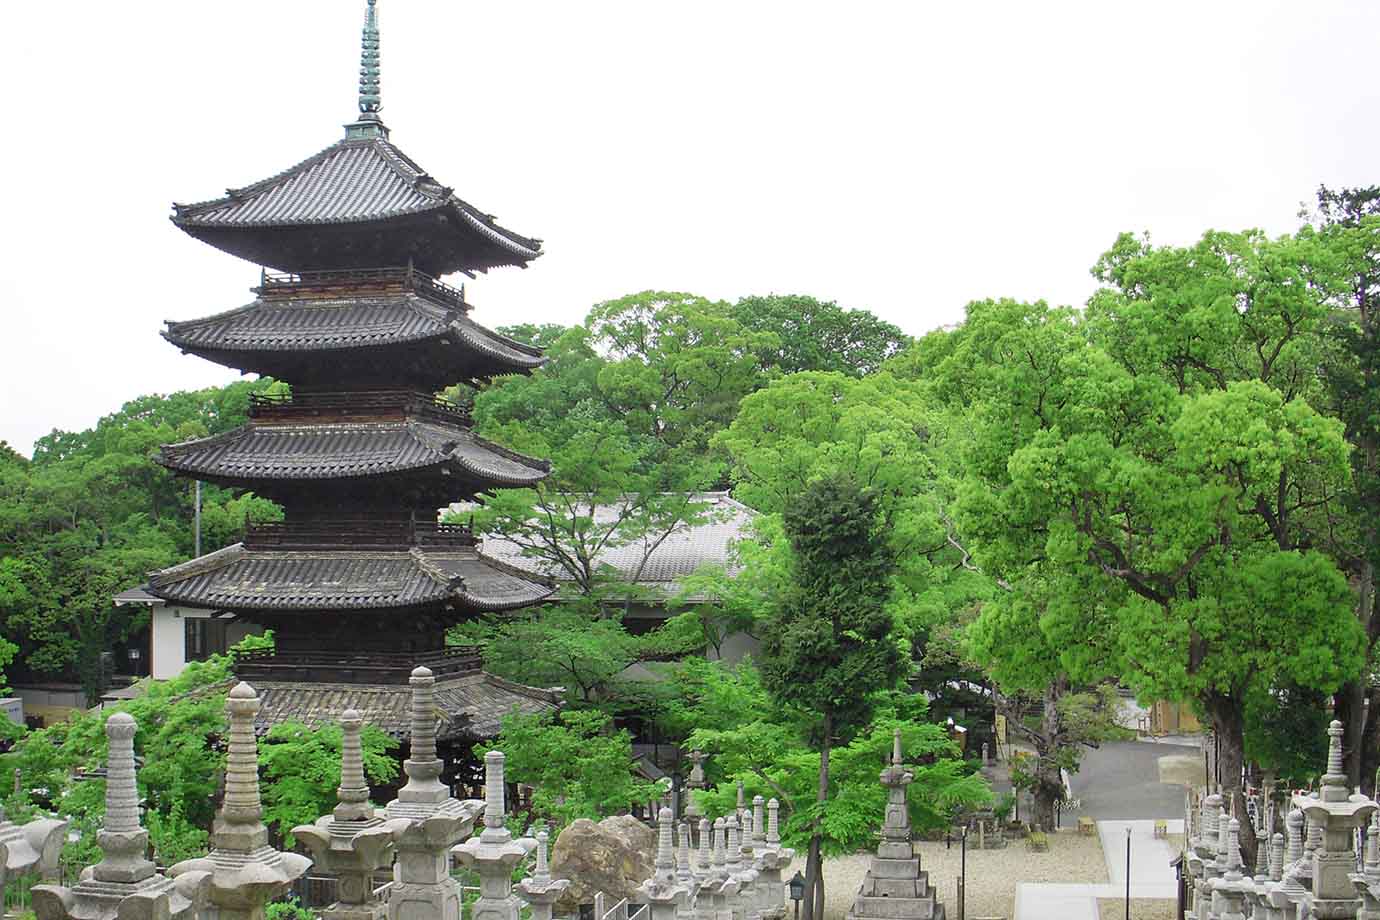 名古屋市昭和区にある八事興正寺は、1688年に創建された真言宗の寺院で、「尾張高野」と呼ばれ、古くから学問や修行の場として信仰を集めてきました。